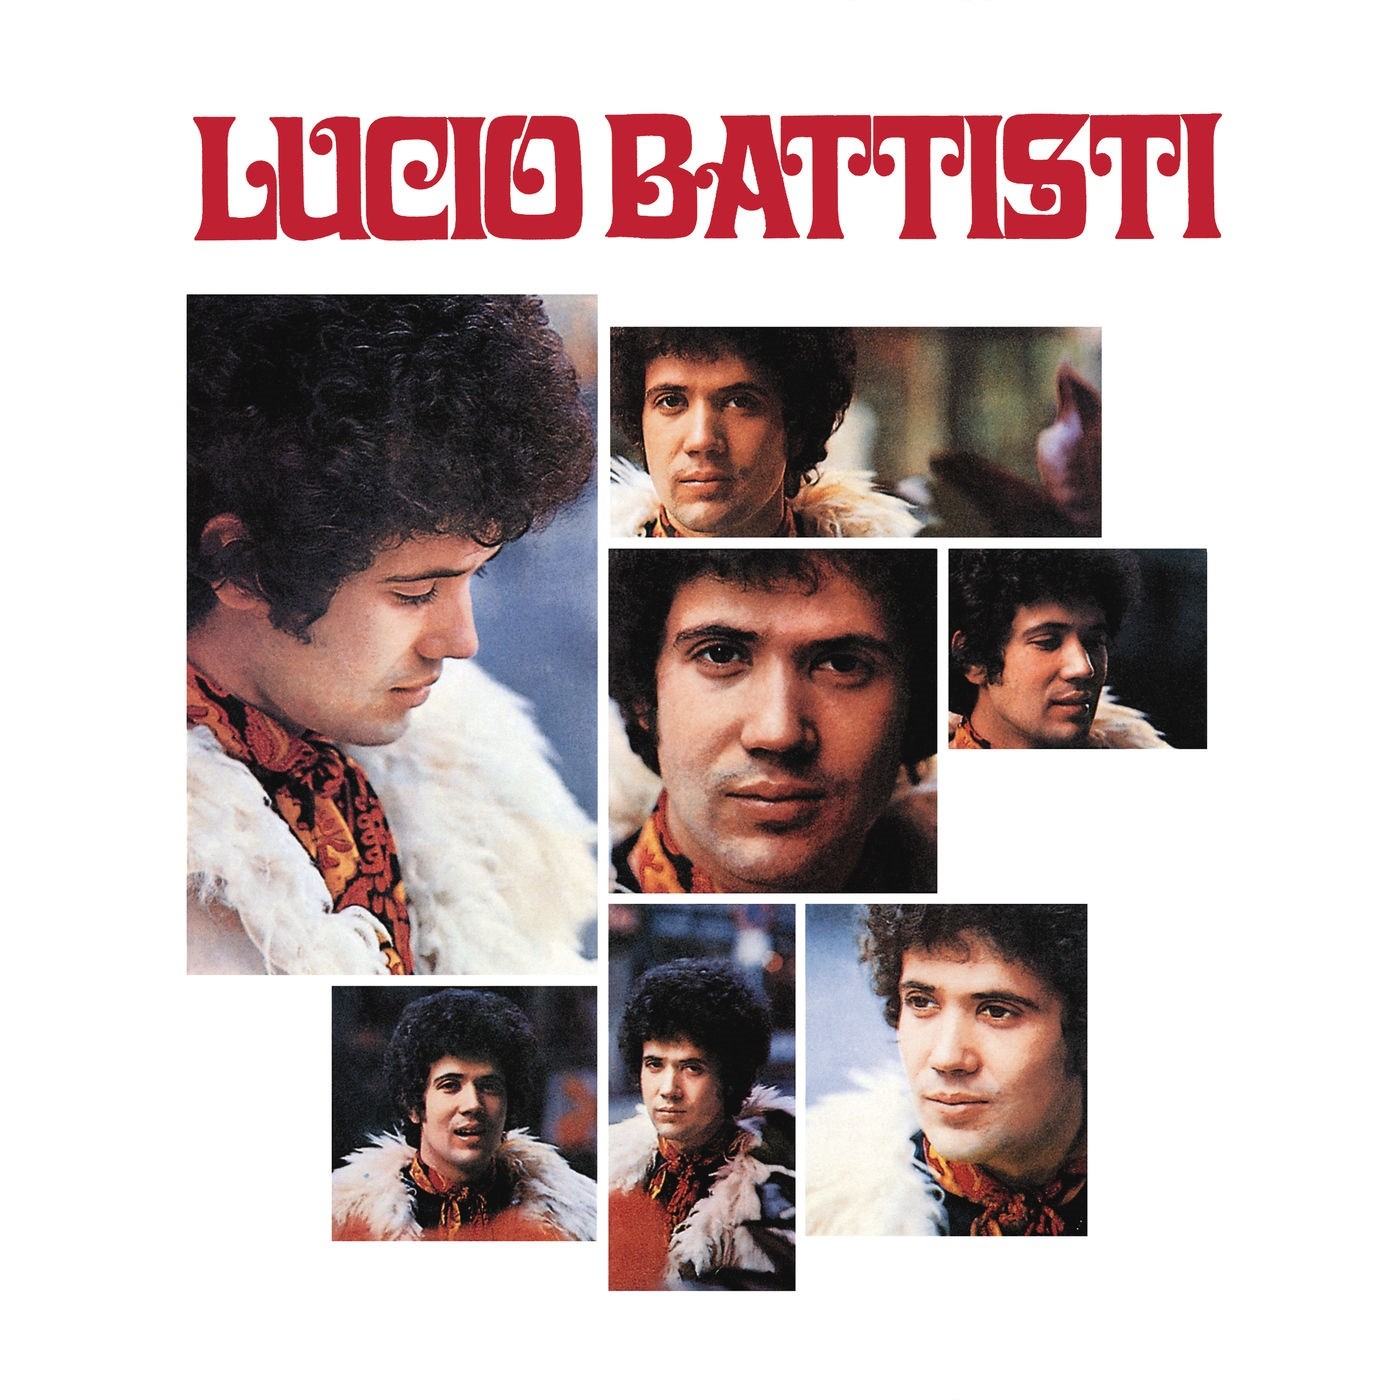 Lucio Battisti - Lucio Battisti (1969/2019) [FLAC 24bit/192kHz] Download